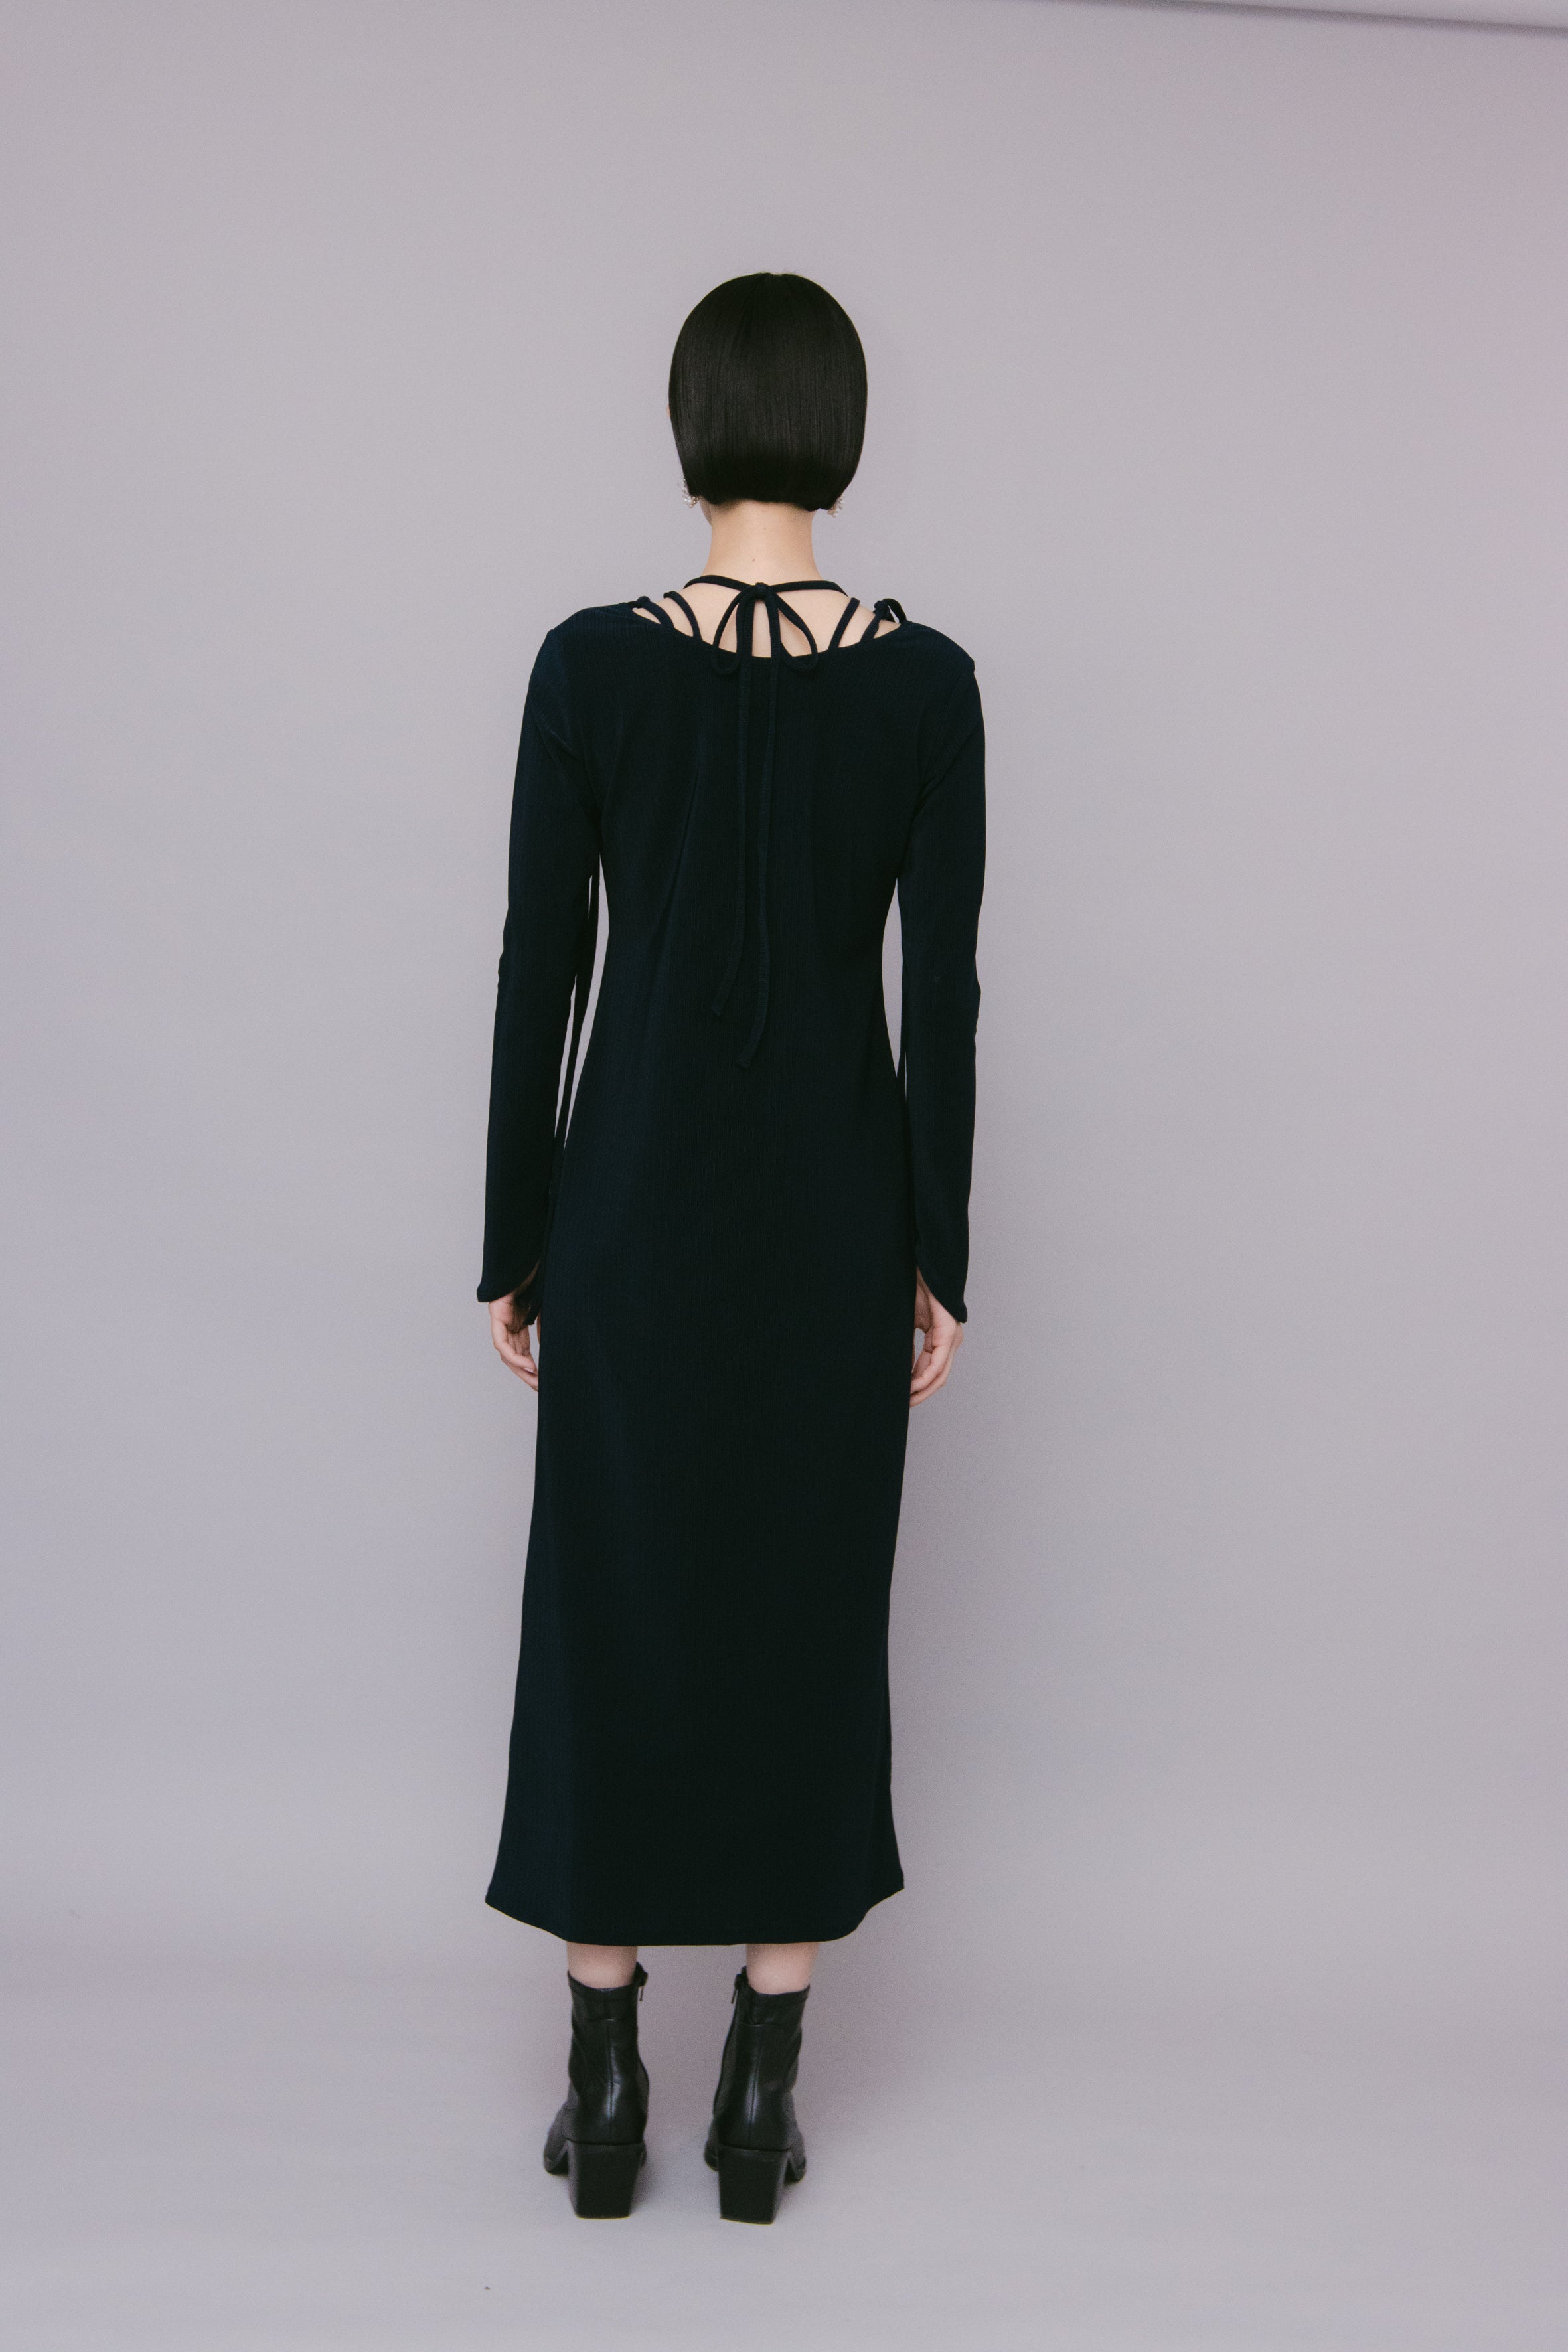 買い日本【MURRAL】Ivy long sleeve dress (Black) ワンピース